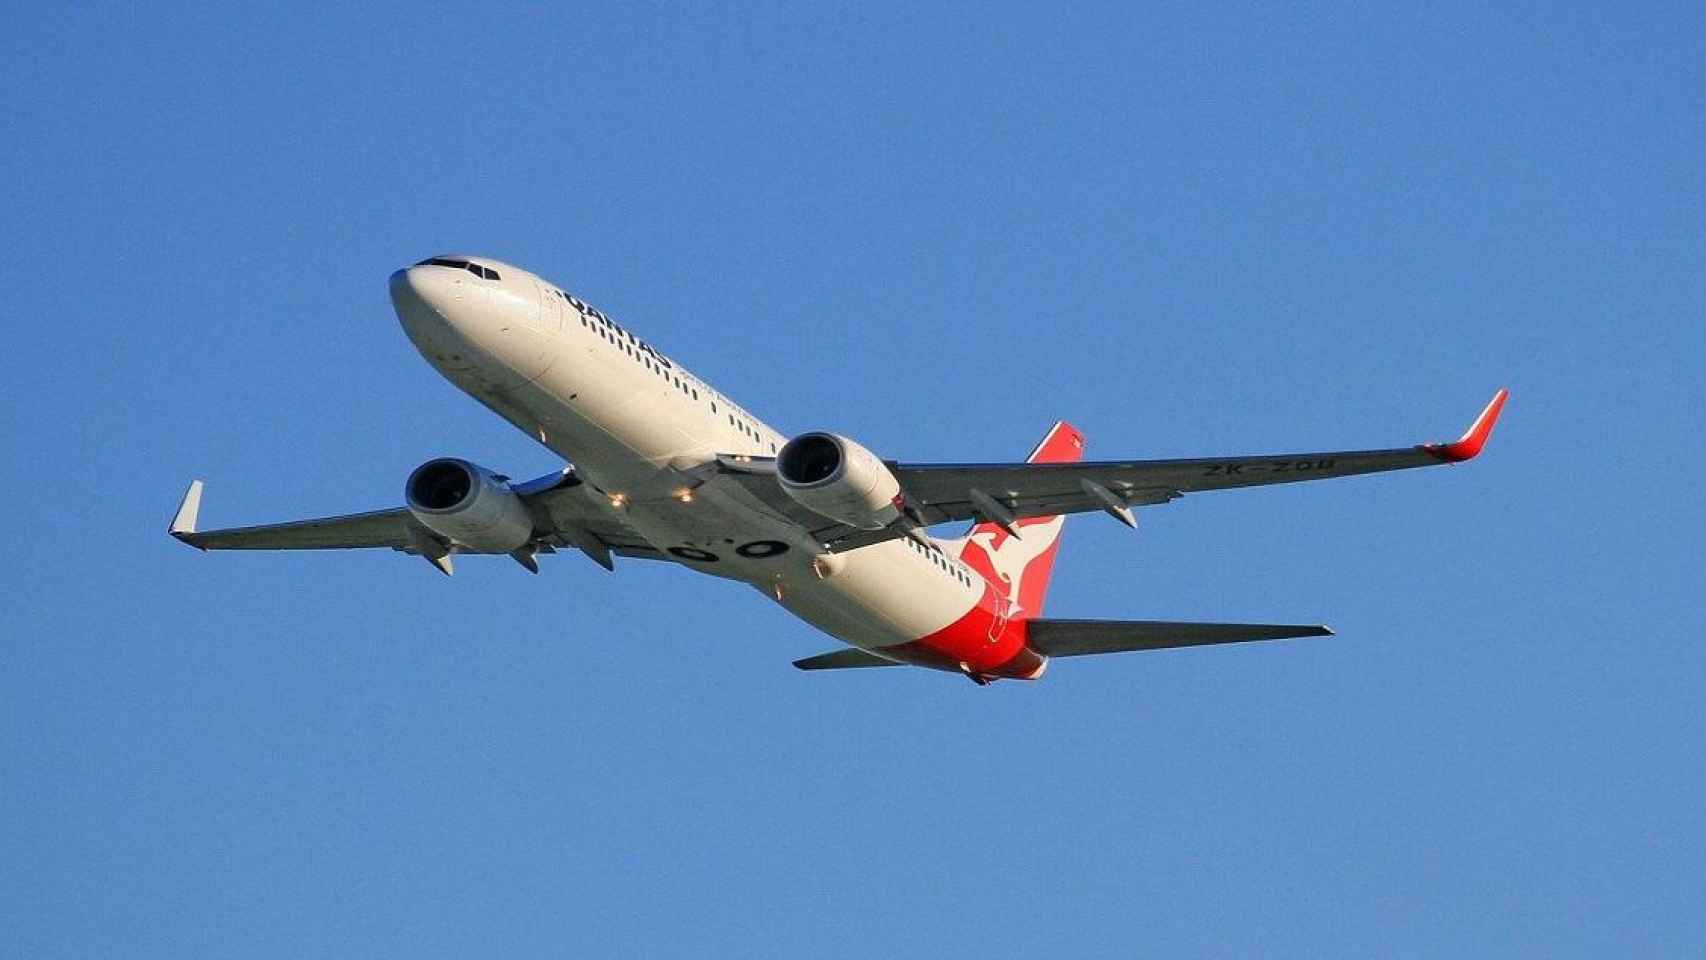 Qantas, nombrada en el primer puesto de las aerolíneas más seguras del mundo / Holger Detje EN PIXABAY